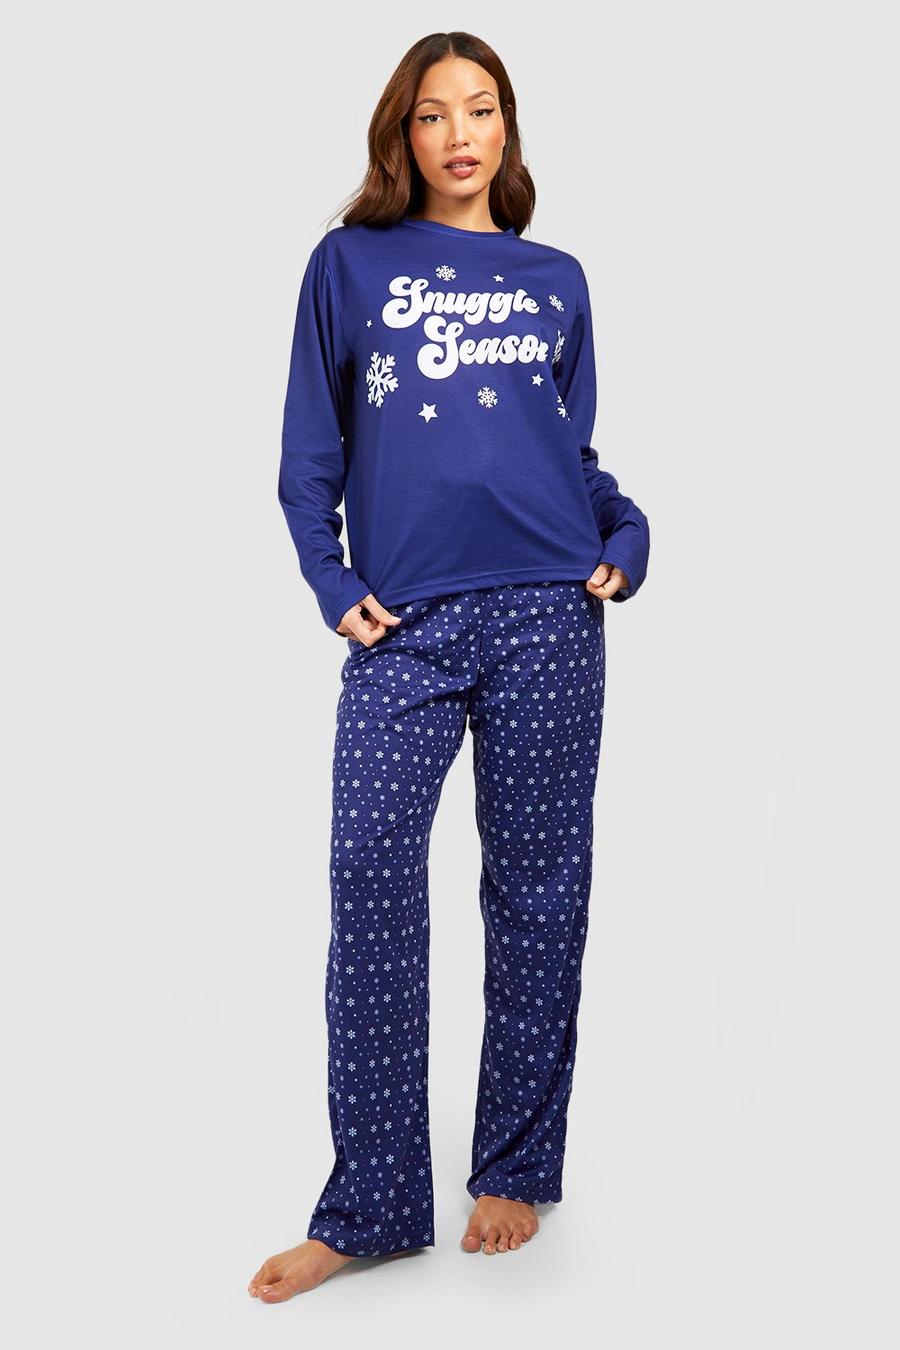 Tall Snuggle Season Pyjama-Set, Blue